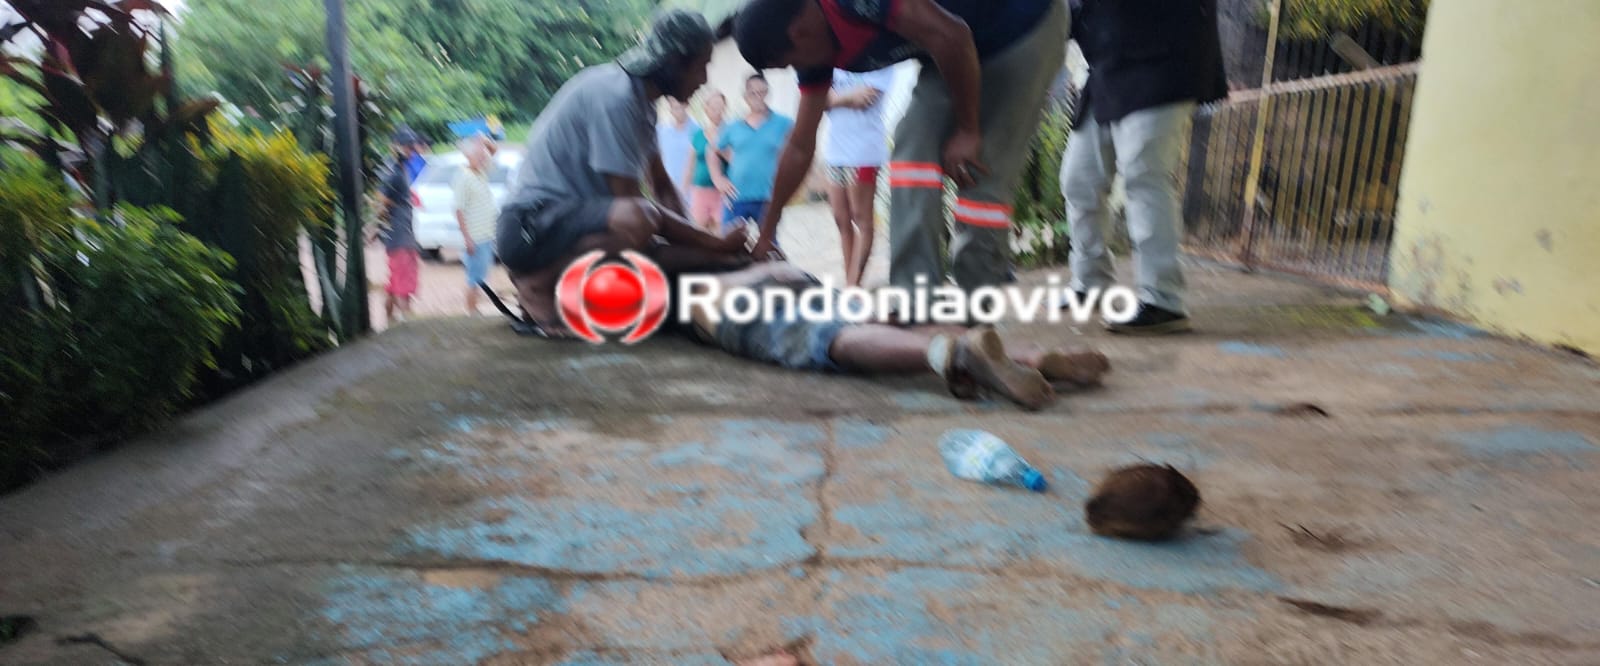 VÍDEO: Ladrão cai do telhado ao tentar invadir residência na capital